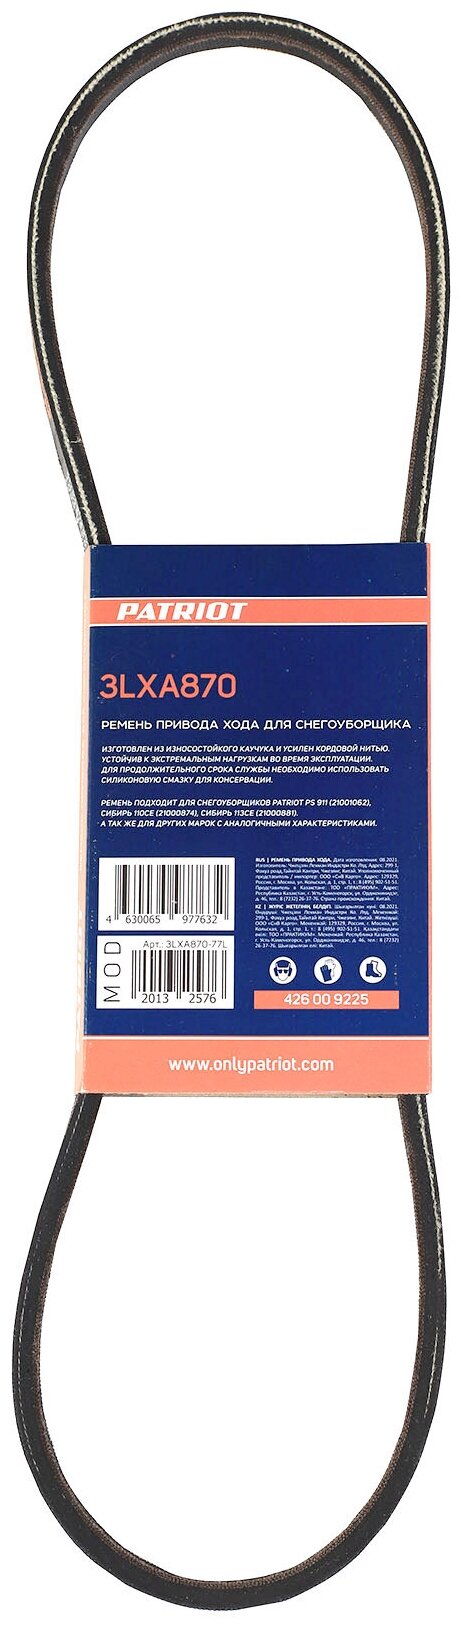 Ремень Patriot 3LXA870 привода хода для снегоуборщика PS 911, PS 917 426009225 .